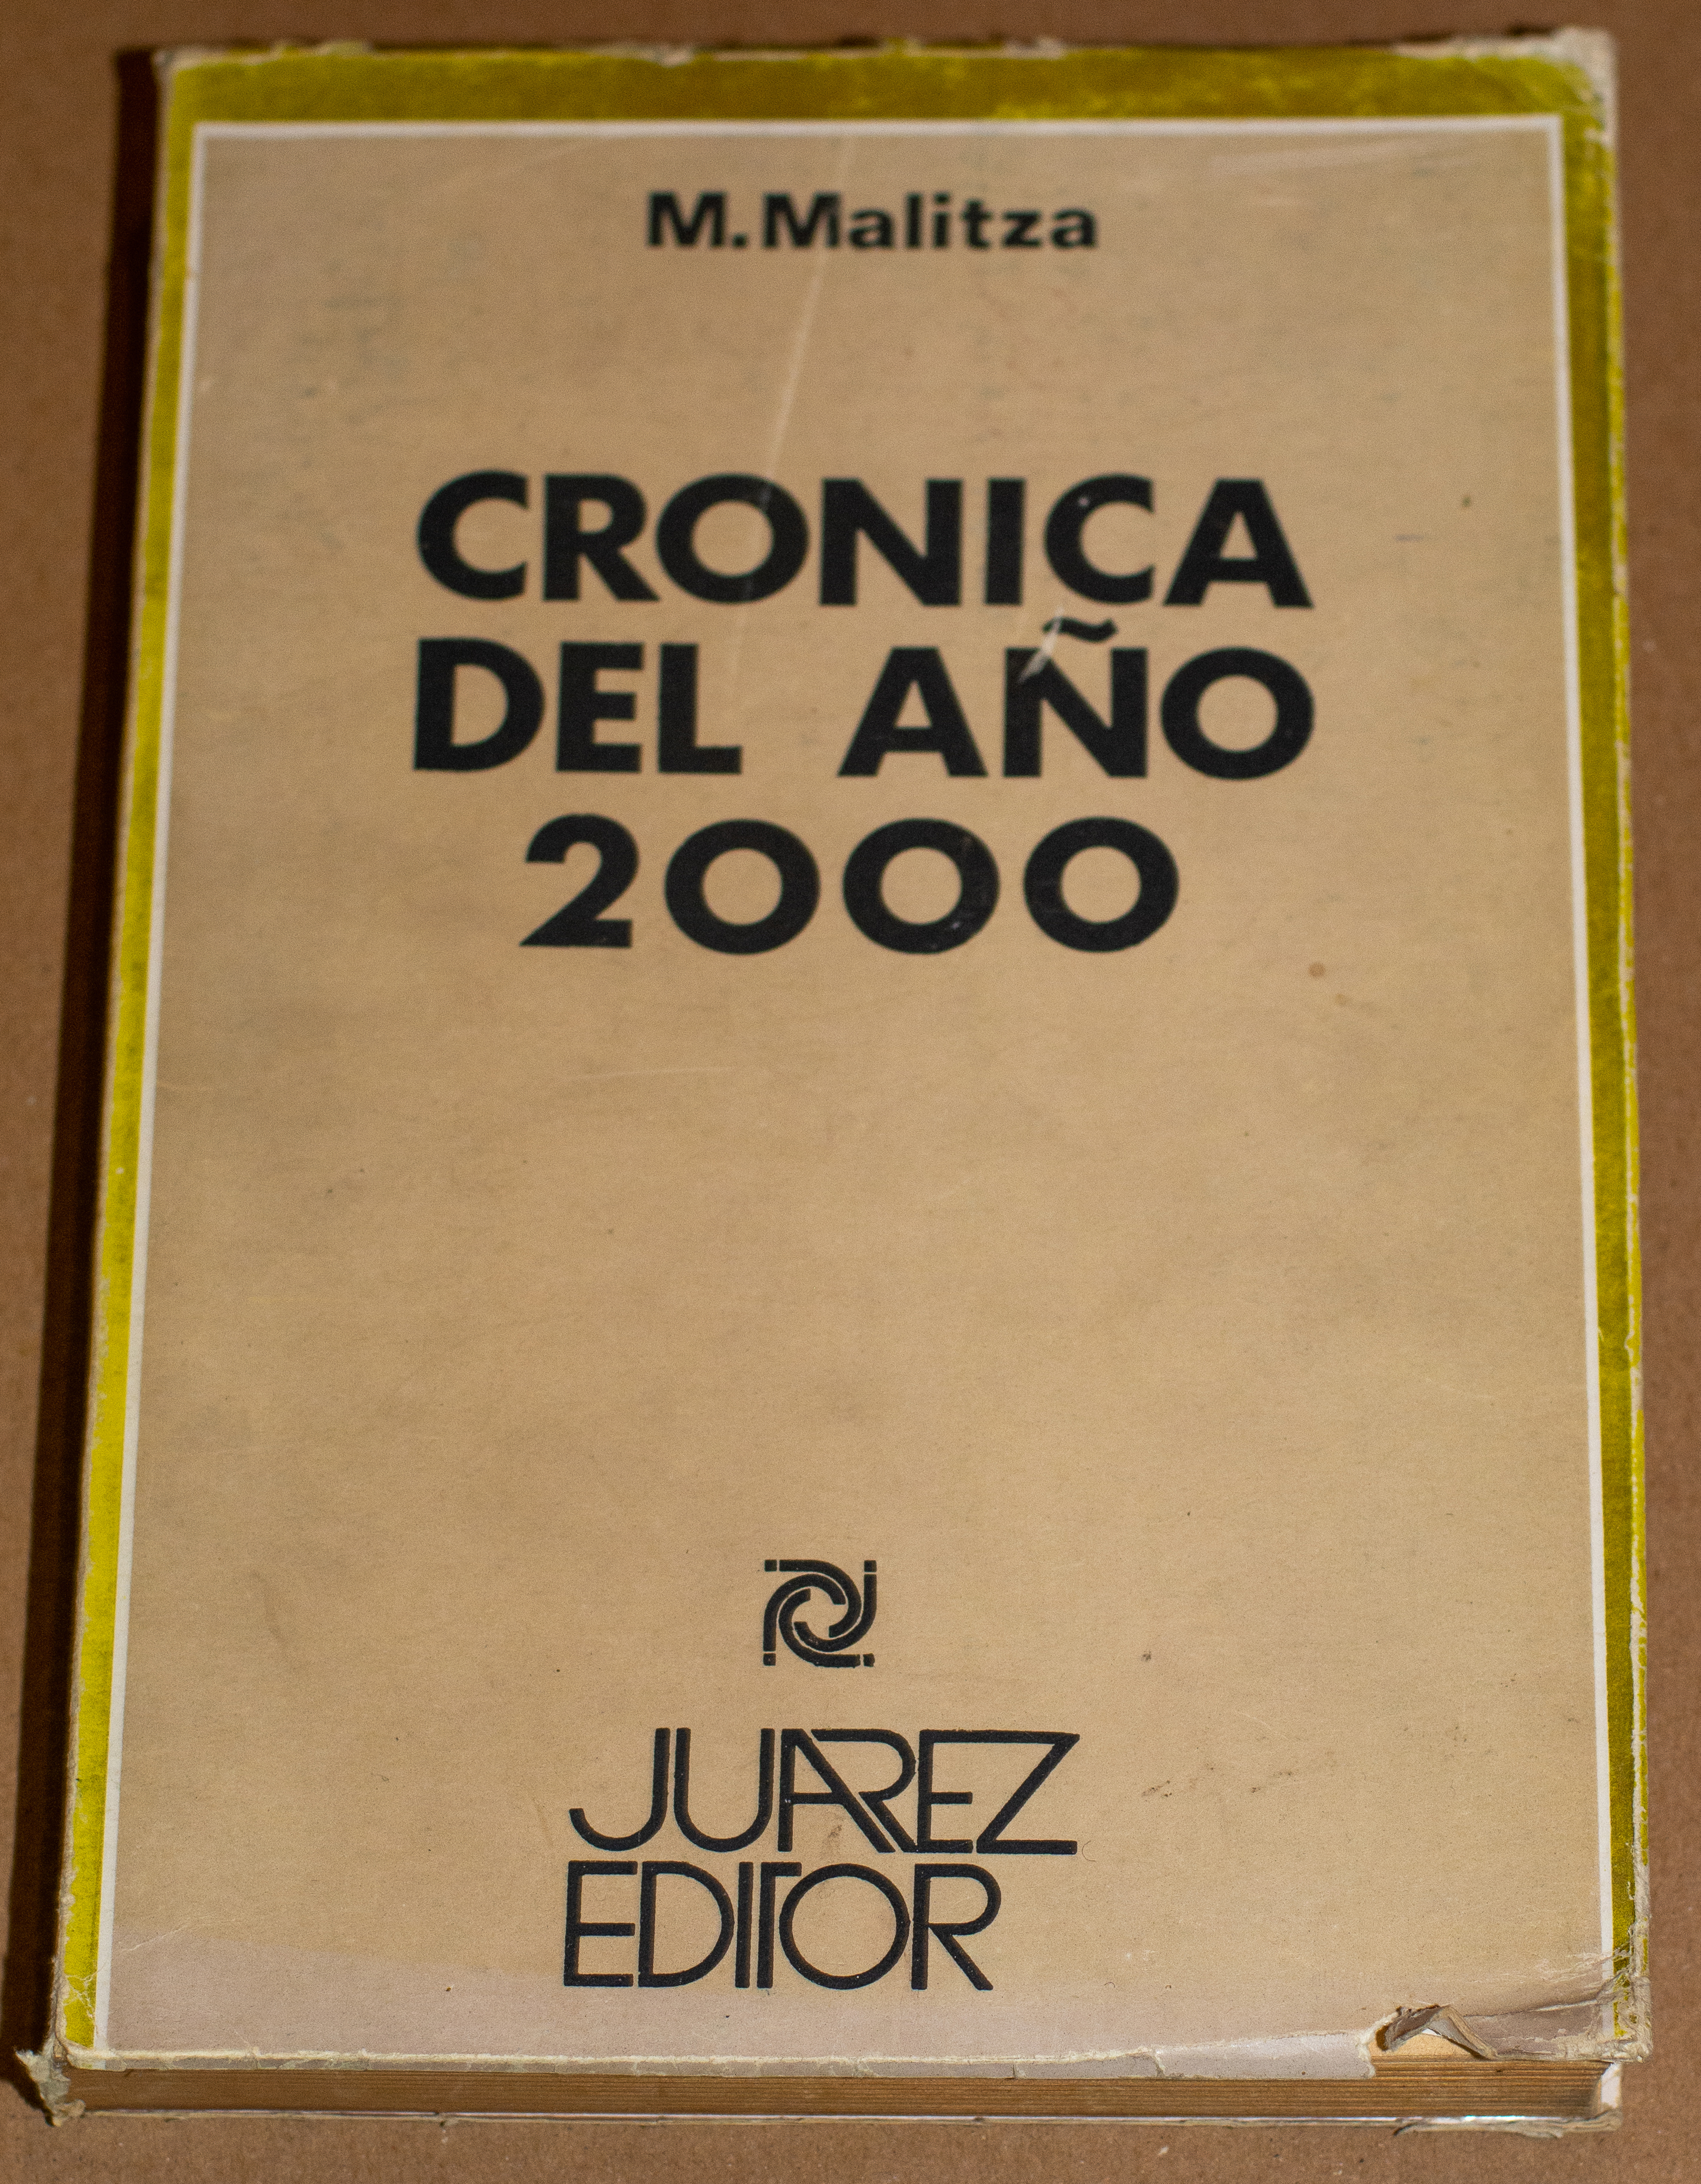 Cronica del ano 2000